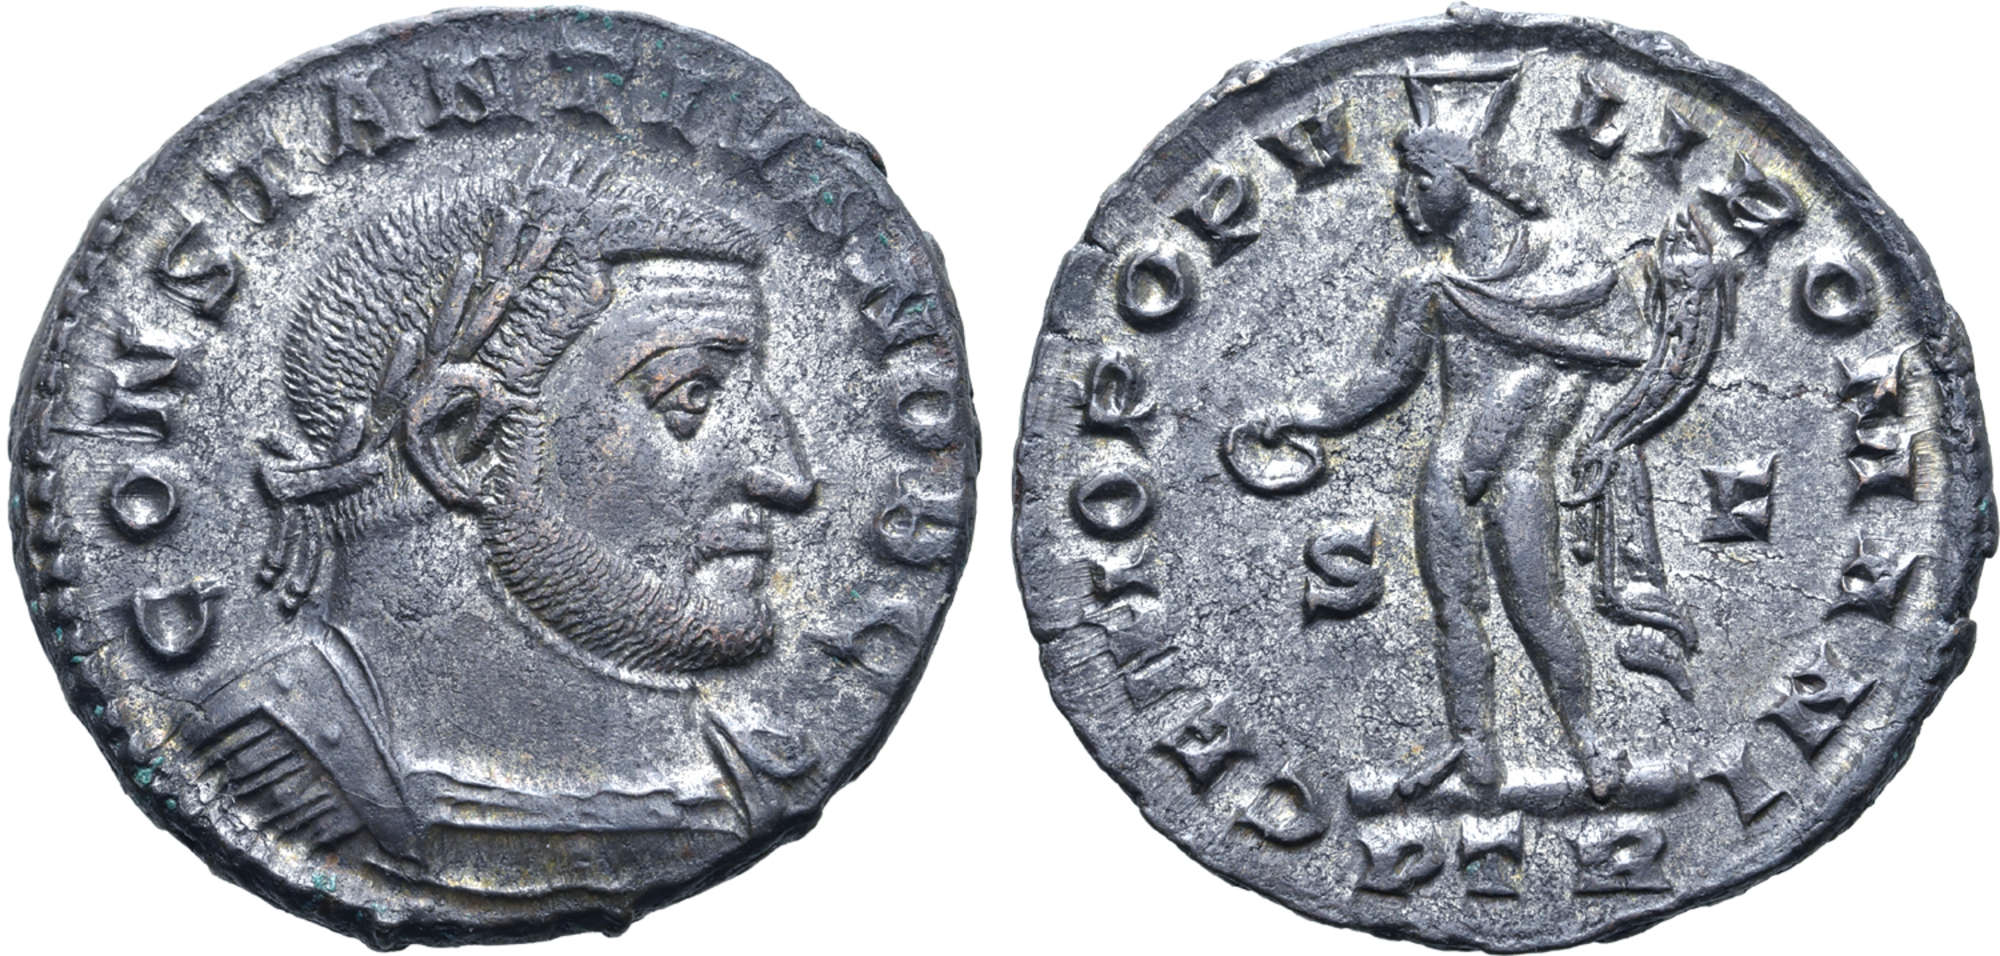 Konstantin den store som Caesar, Treveri 303-305 e.Kr. Skarp och silvrig Follis från Raucebyskatten